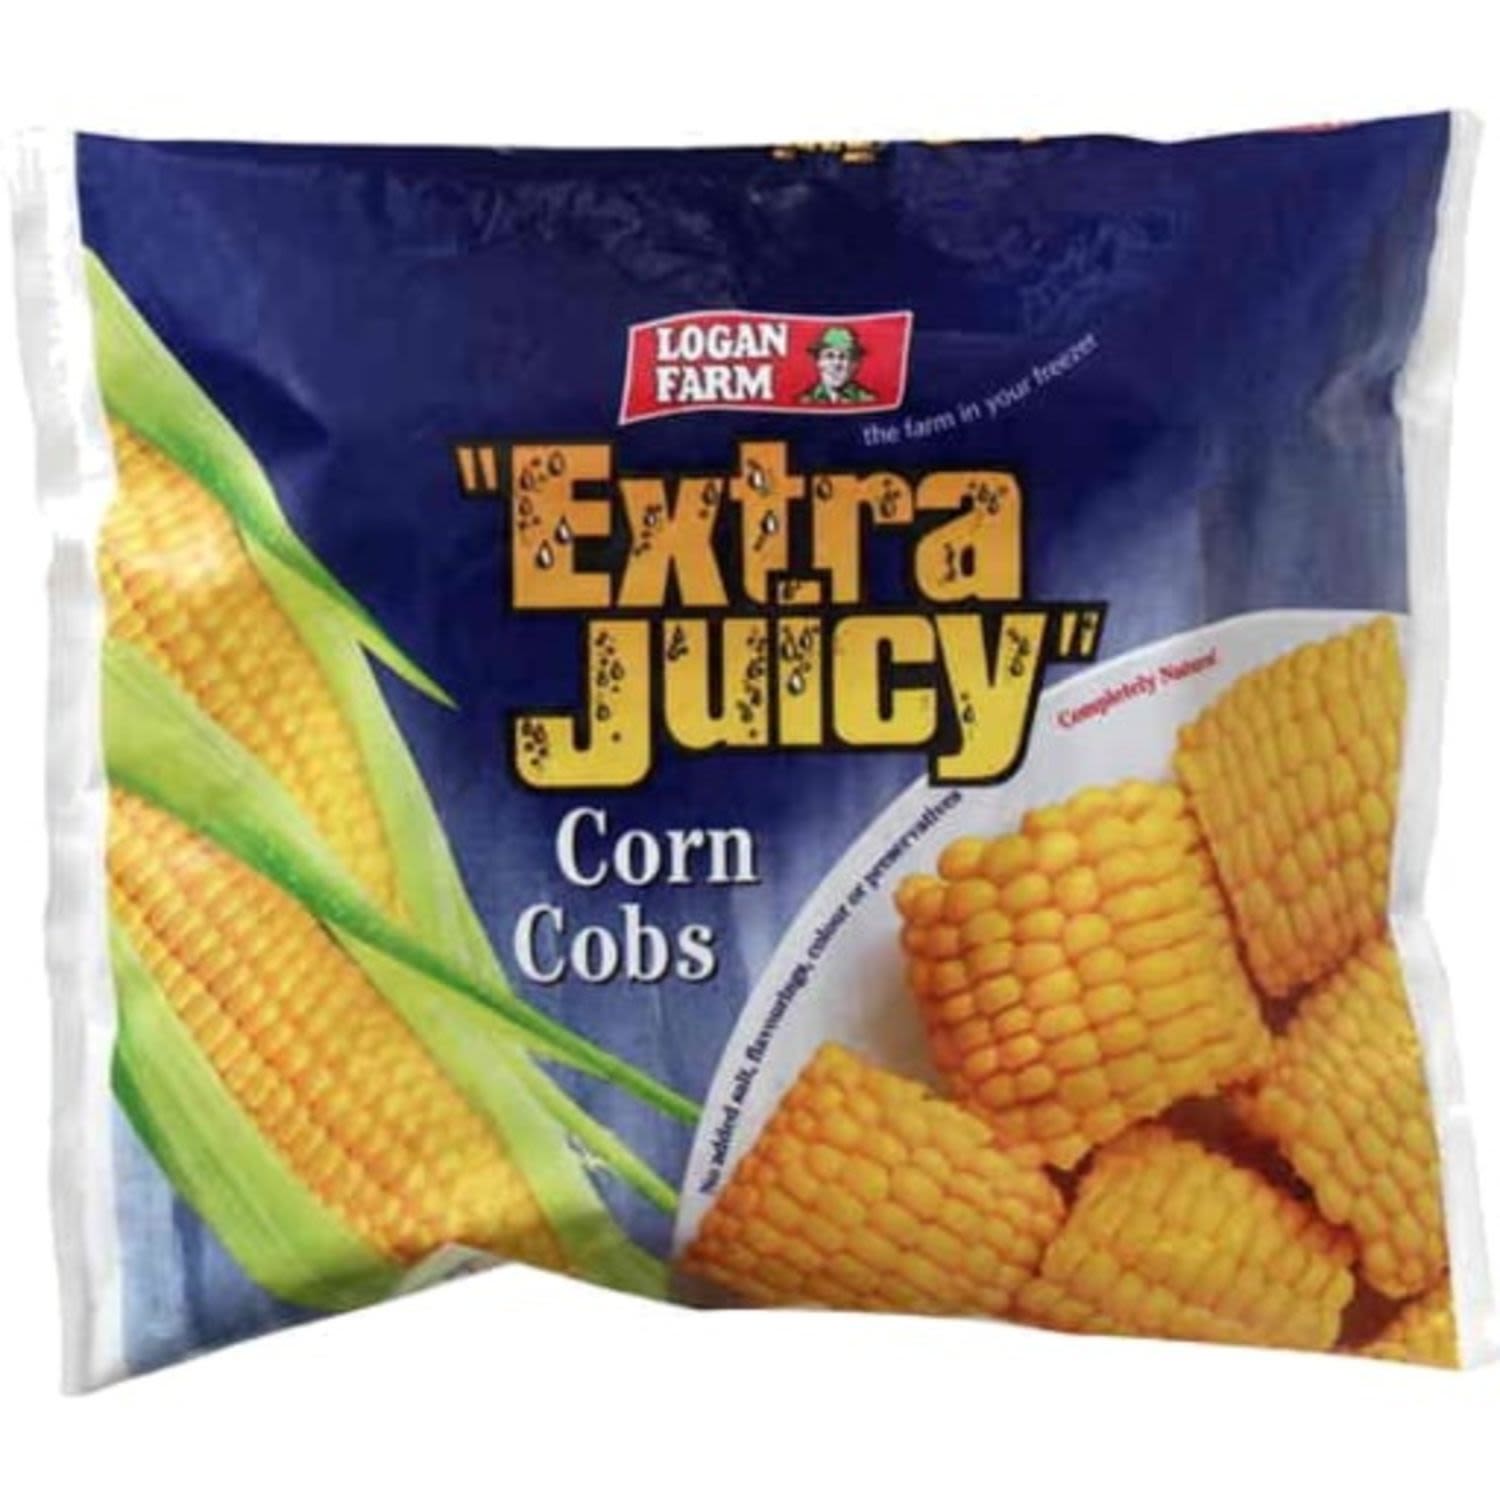 Logan Farm Corn Cobs Extra Juicy, 1 Kilogram